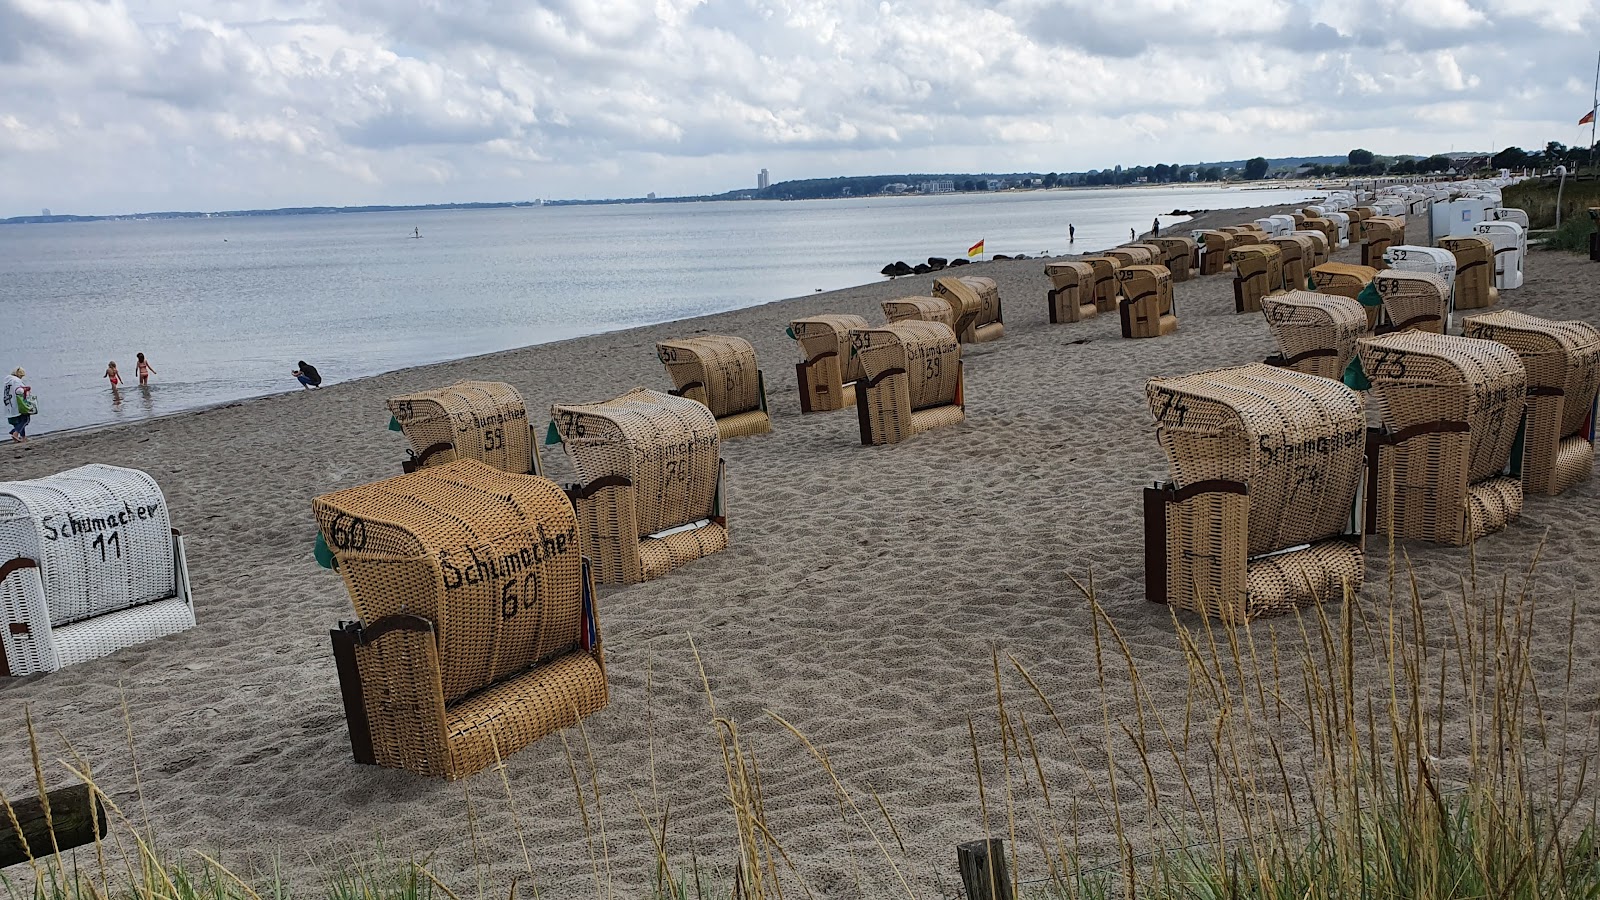 Foto de Haffkrug strand - lugar popular entre os apreciadores de relaxamento